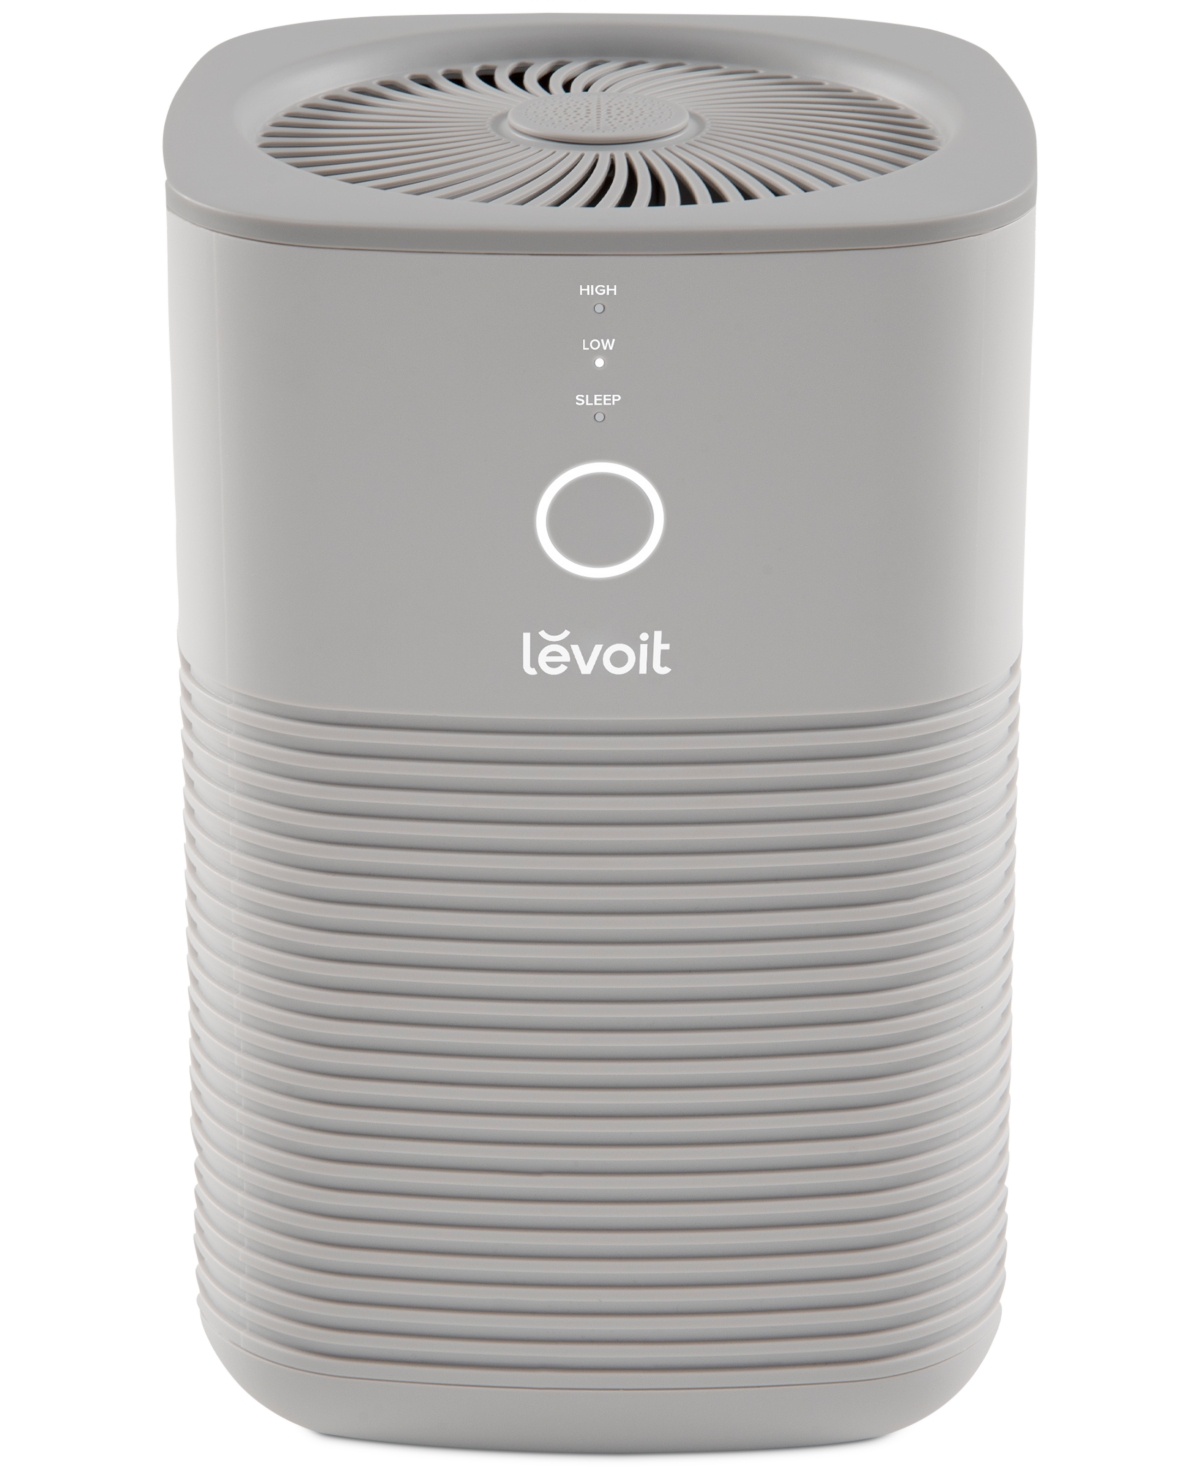 Levoit Desktop True Hepa Air Purifier In Gray